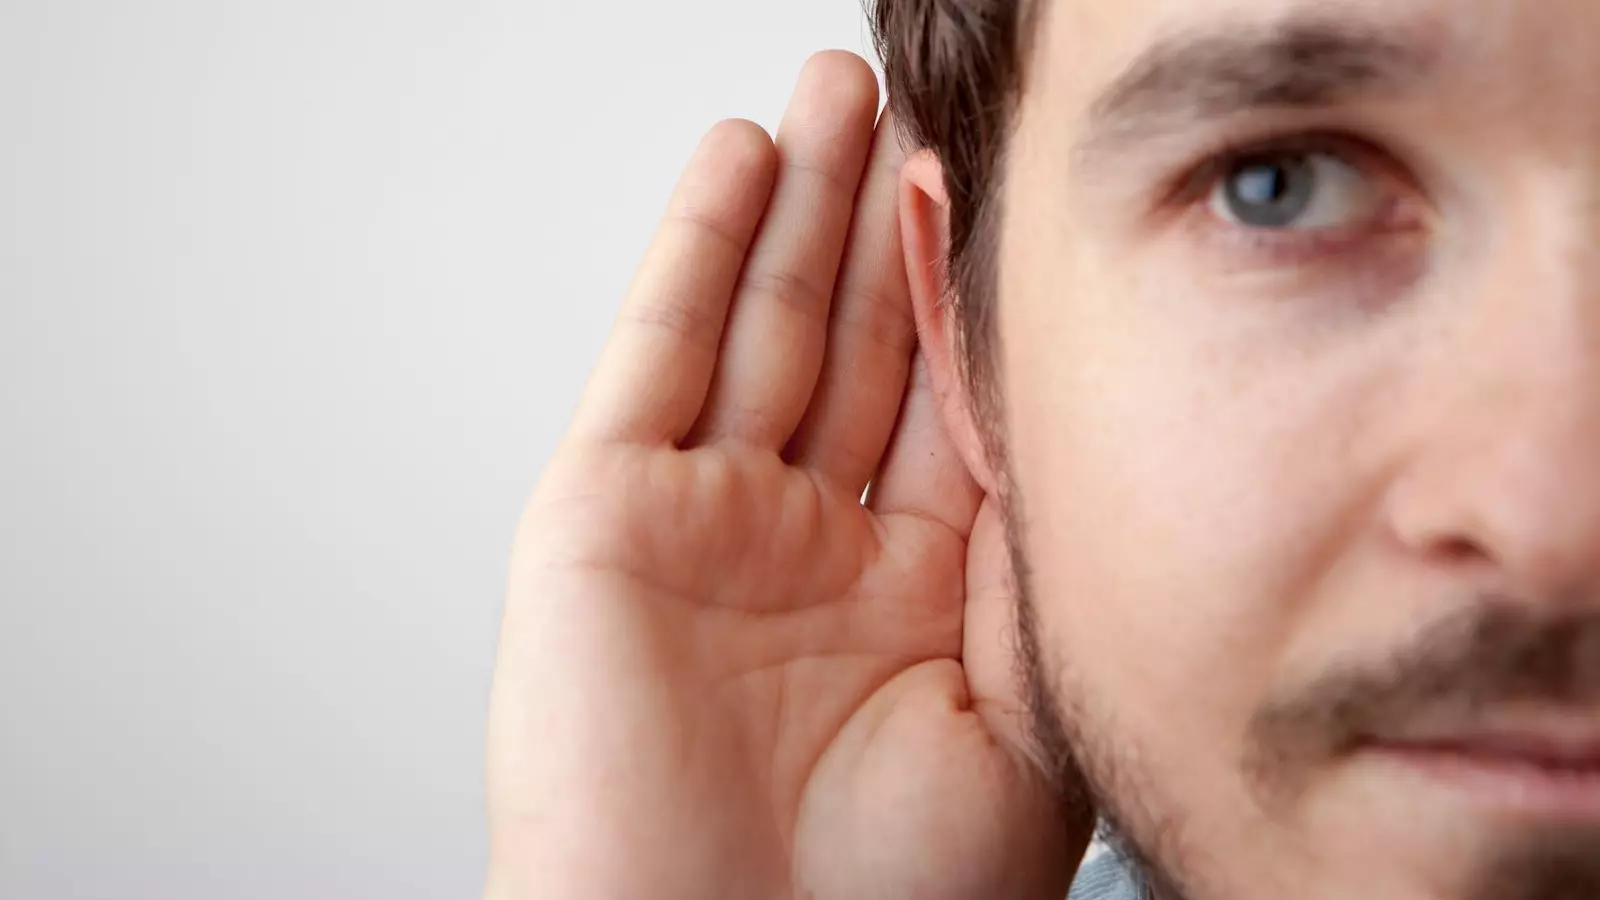 Điếc tai là tình trạng người bệnh bị suy giảm khả năng nghe